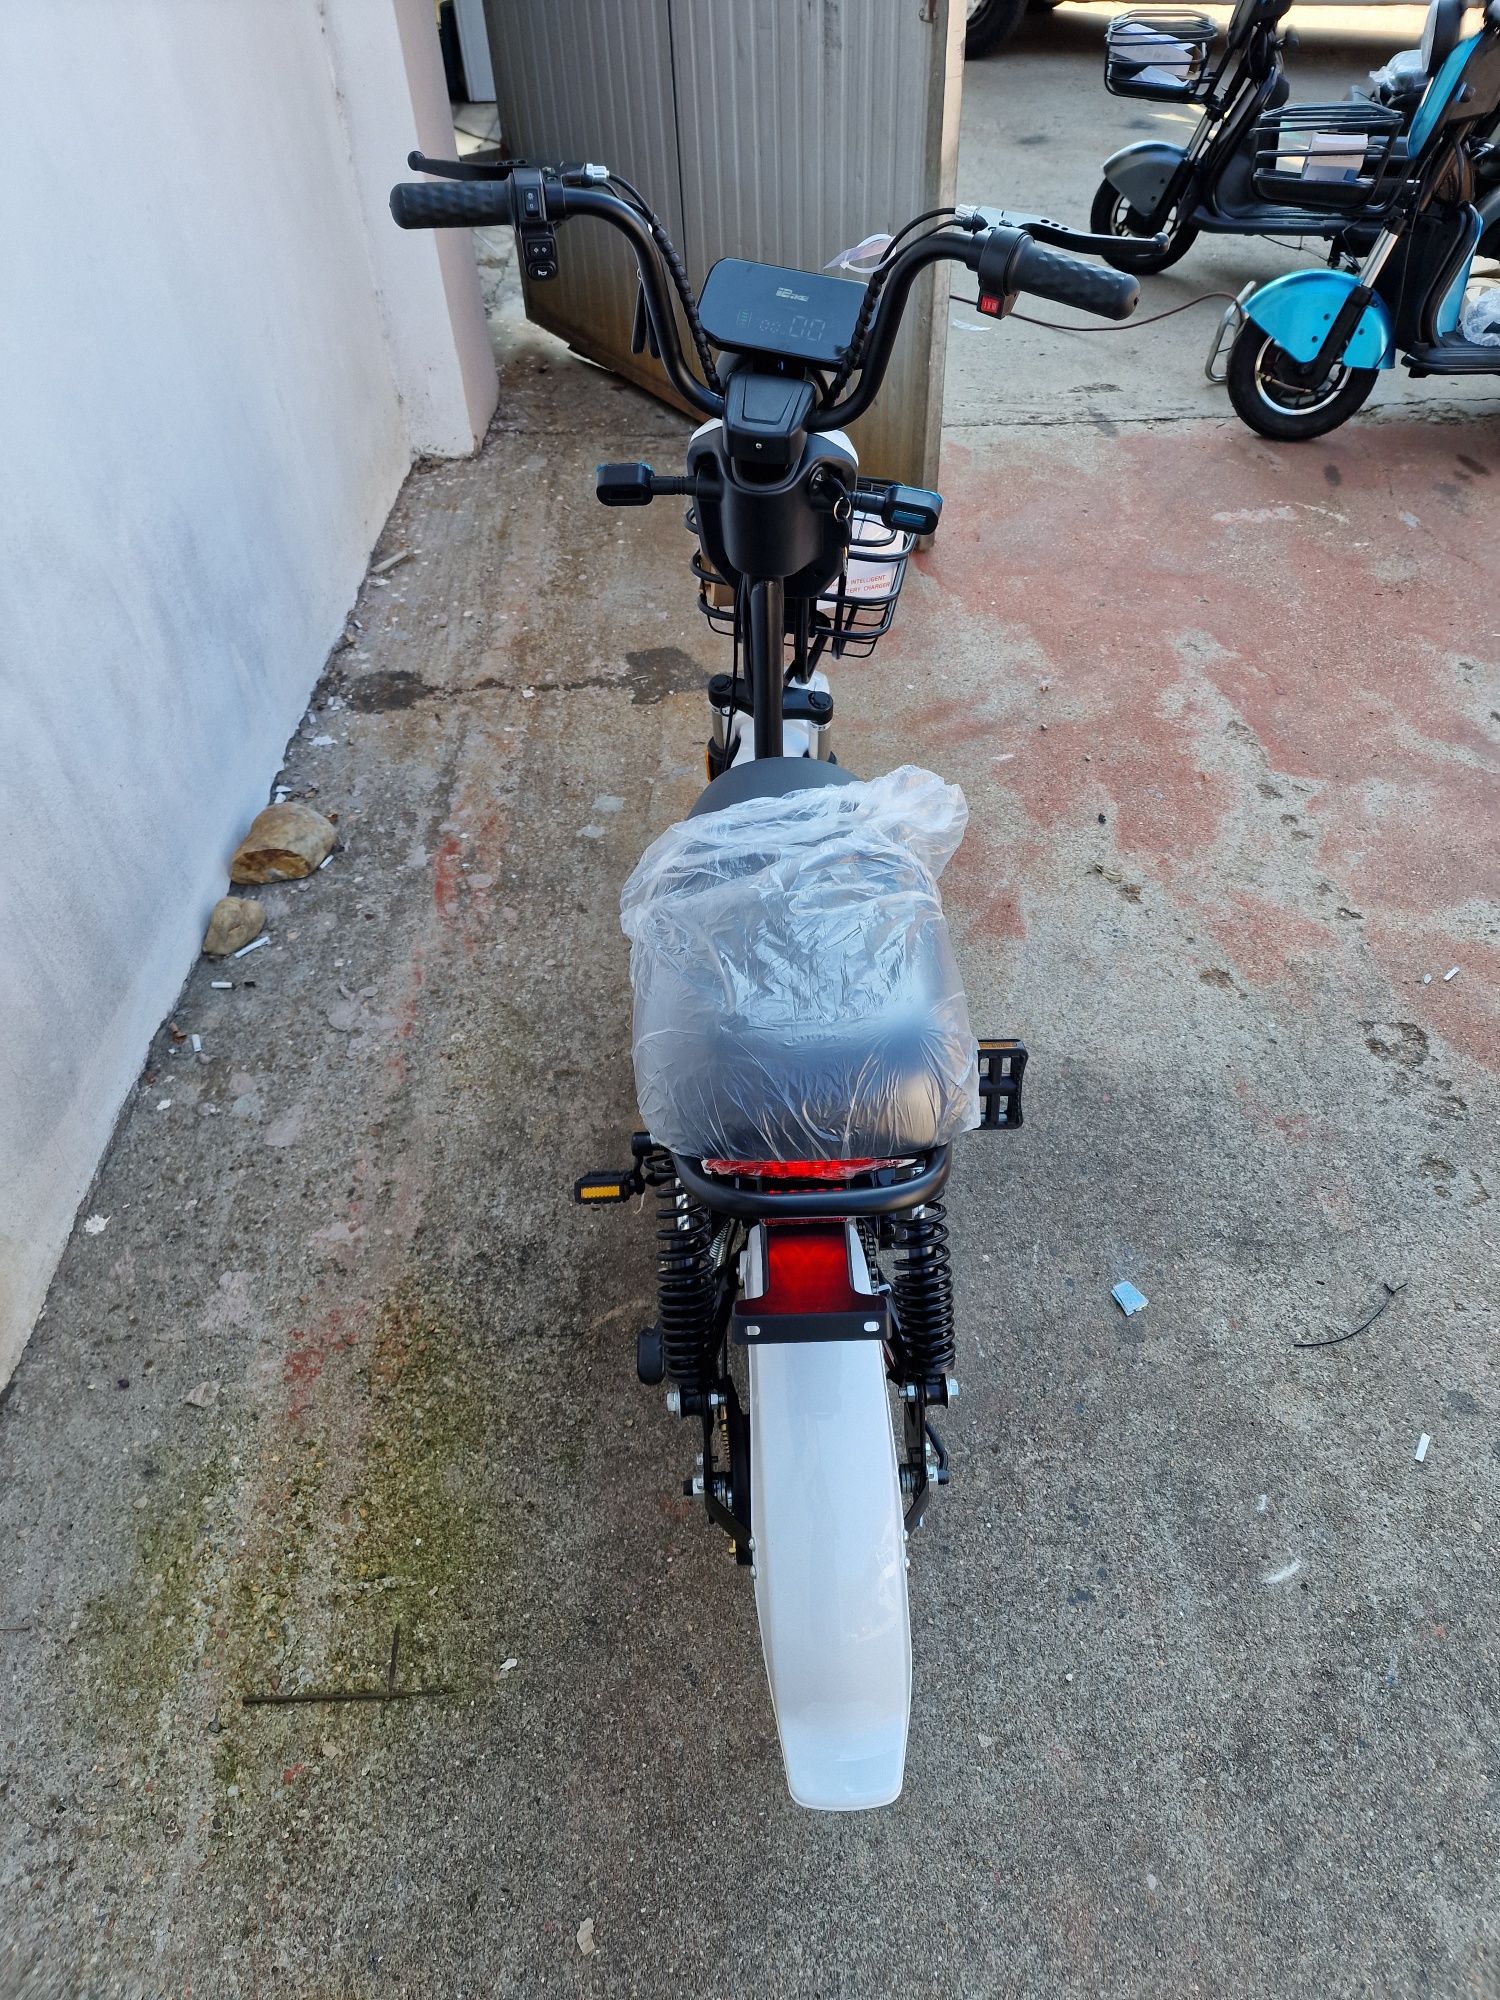 Scuter electric moped, bicicleta electrica Cod 0019